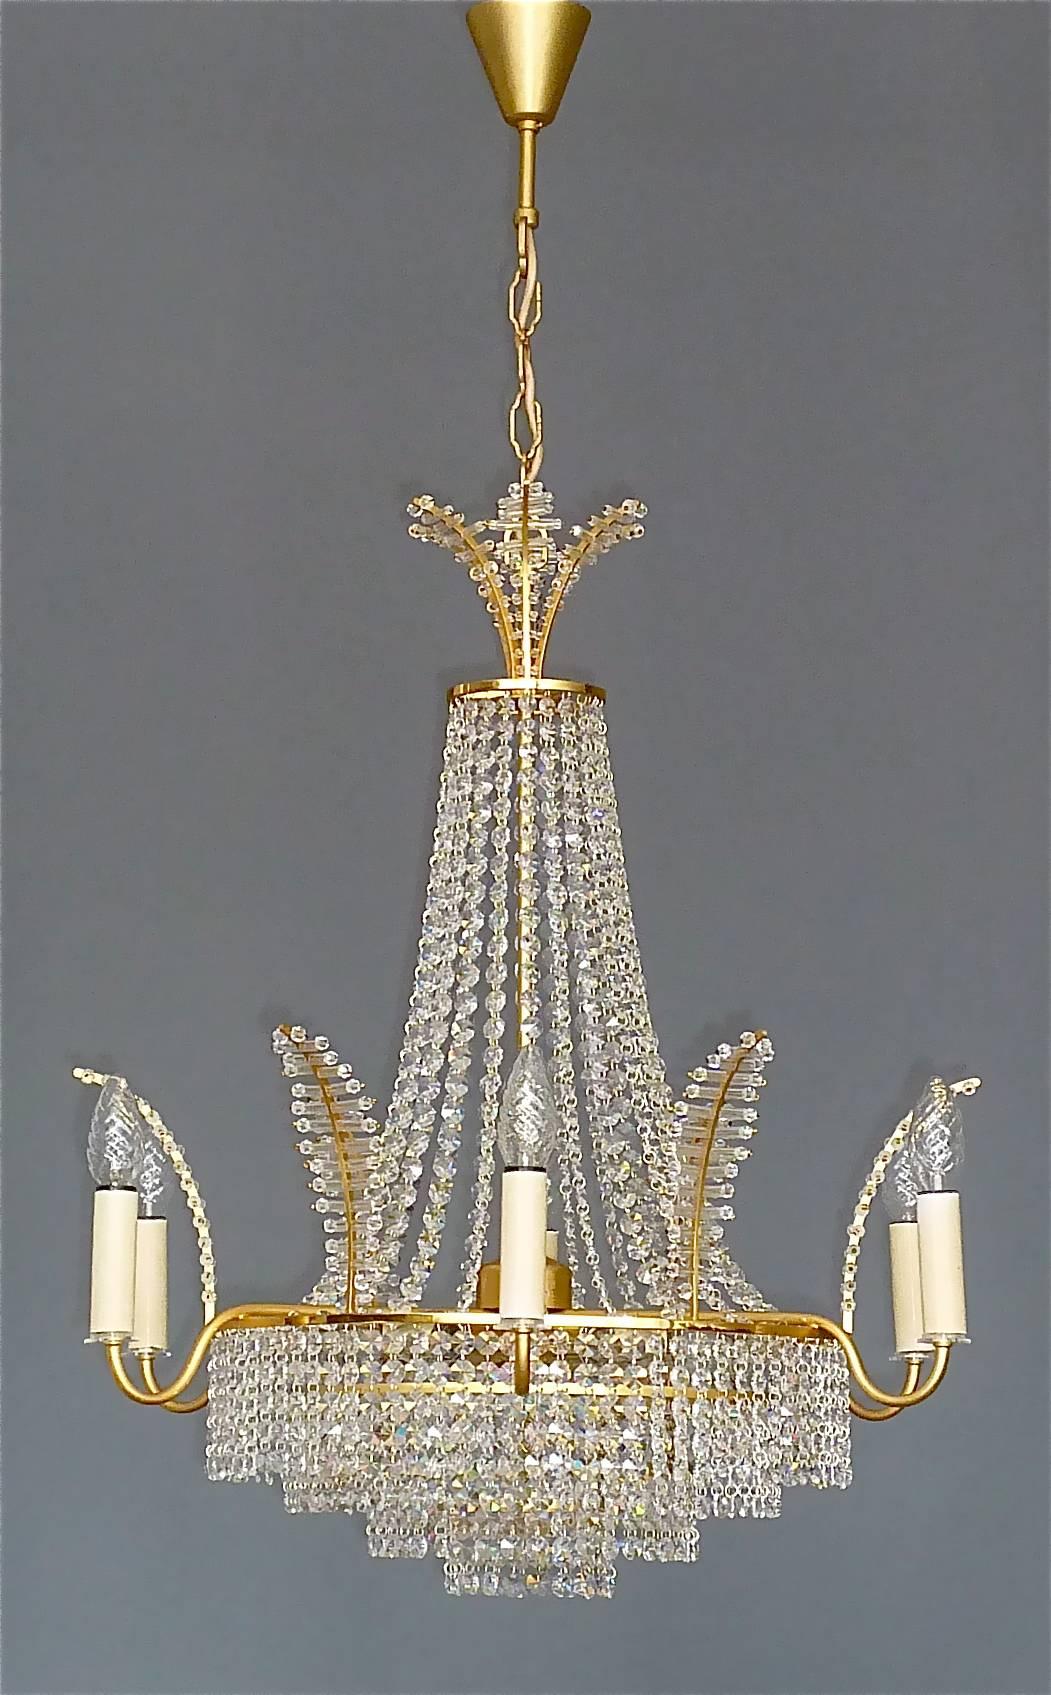 Schöner großer Kronleuchter aus vergoldetem Messing und Kristallglas von der Firma Palwa, Deutschland, um 1960. Der klassische Kronleuchter, der an einer Kette hängt und in der Länge verstellbar ist, hat vier kaskadenförmige Stufen, ein